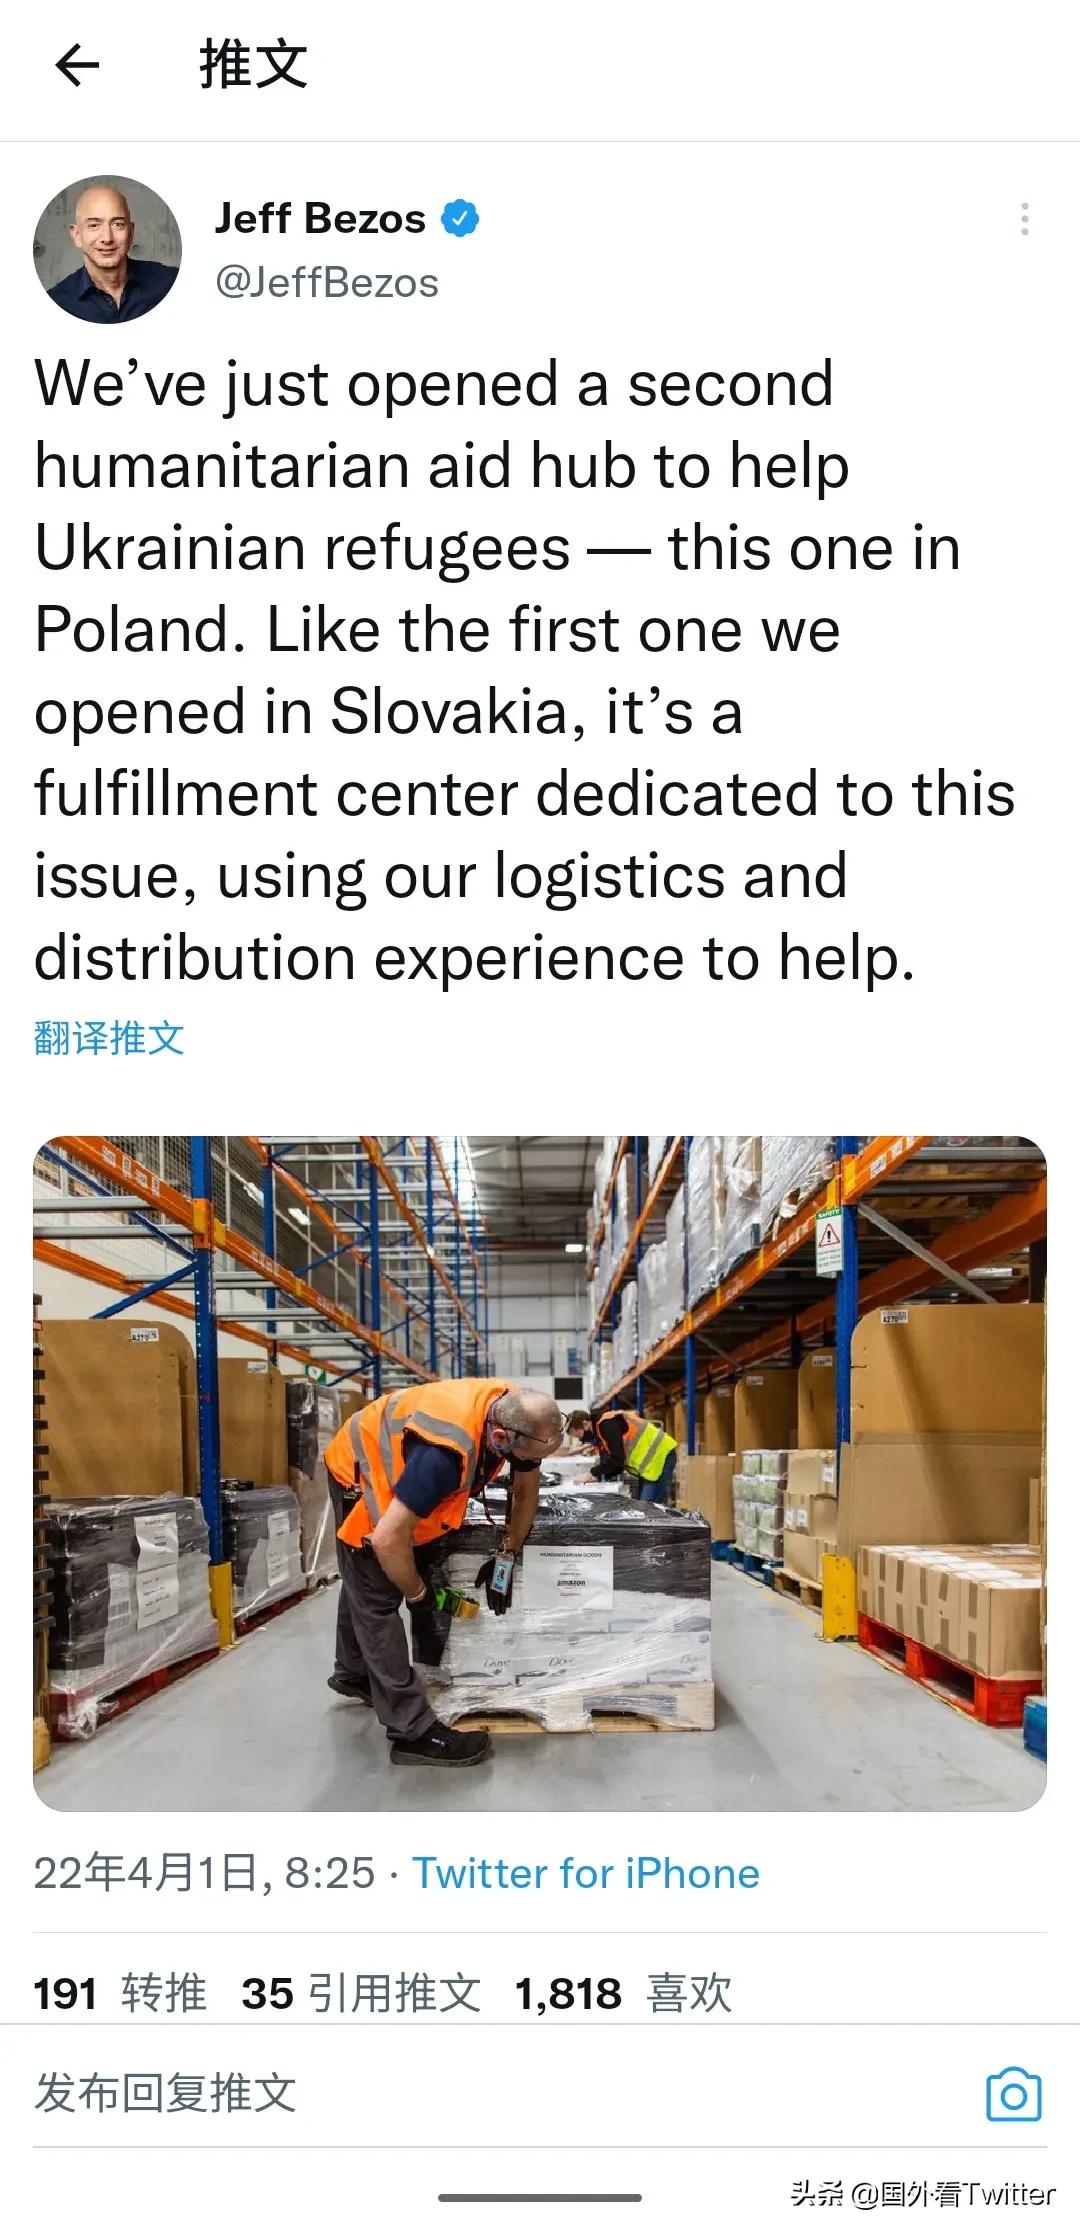 亚马逊CEO推特宣布开设第二个援助中心帮助乌克兰难民